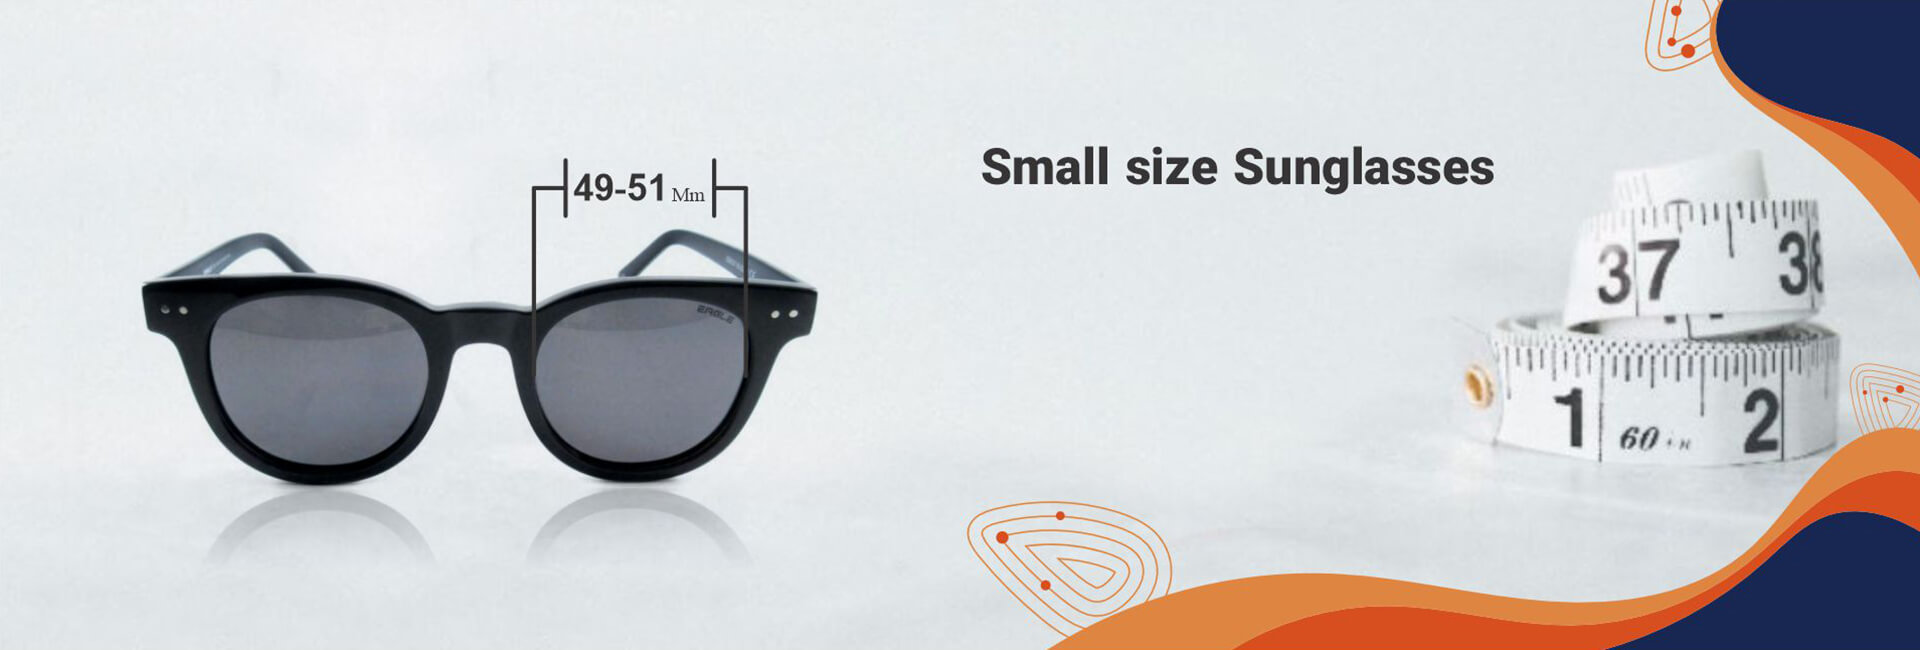 small size sunglasses